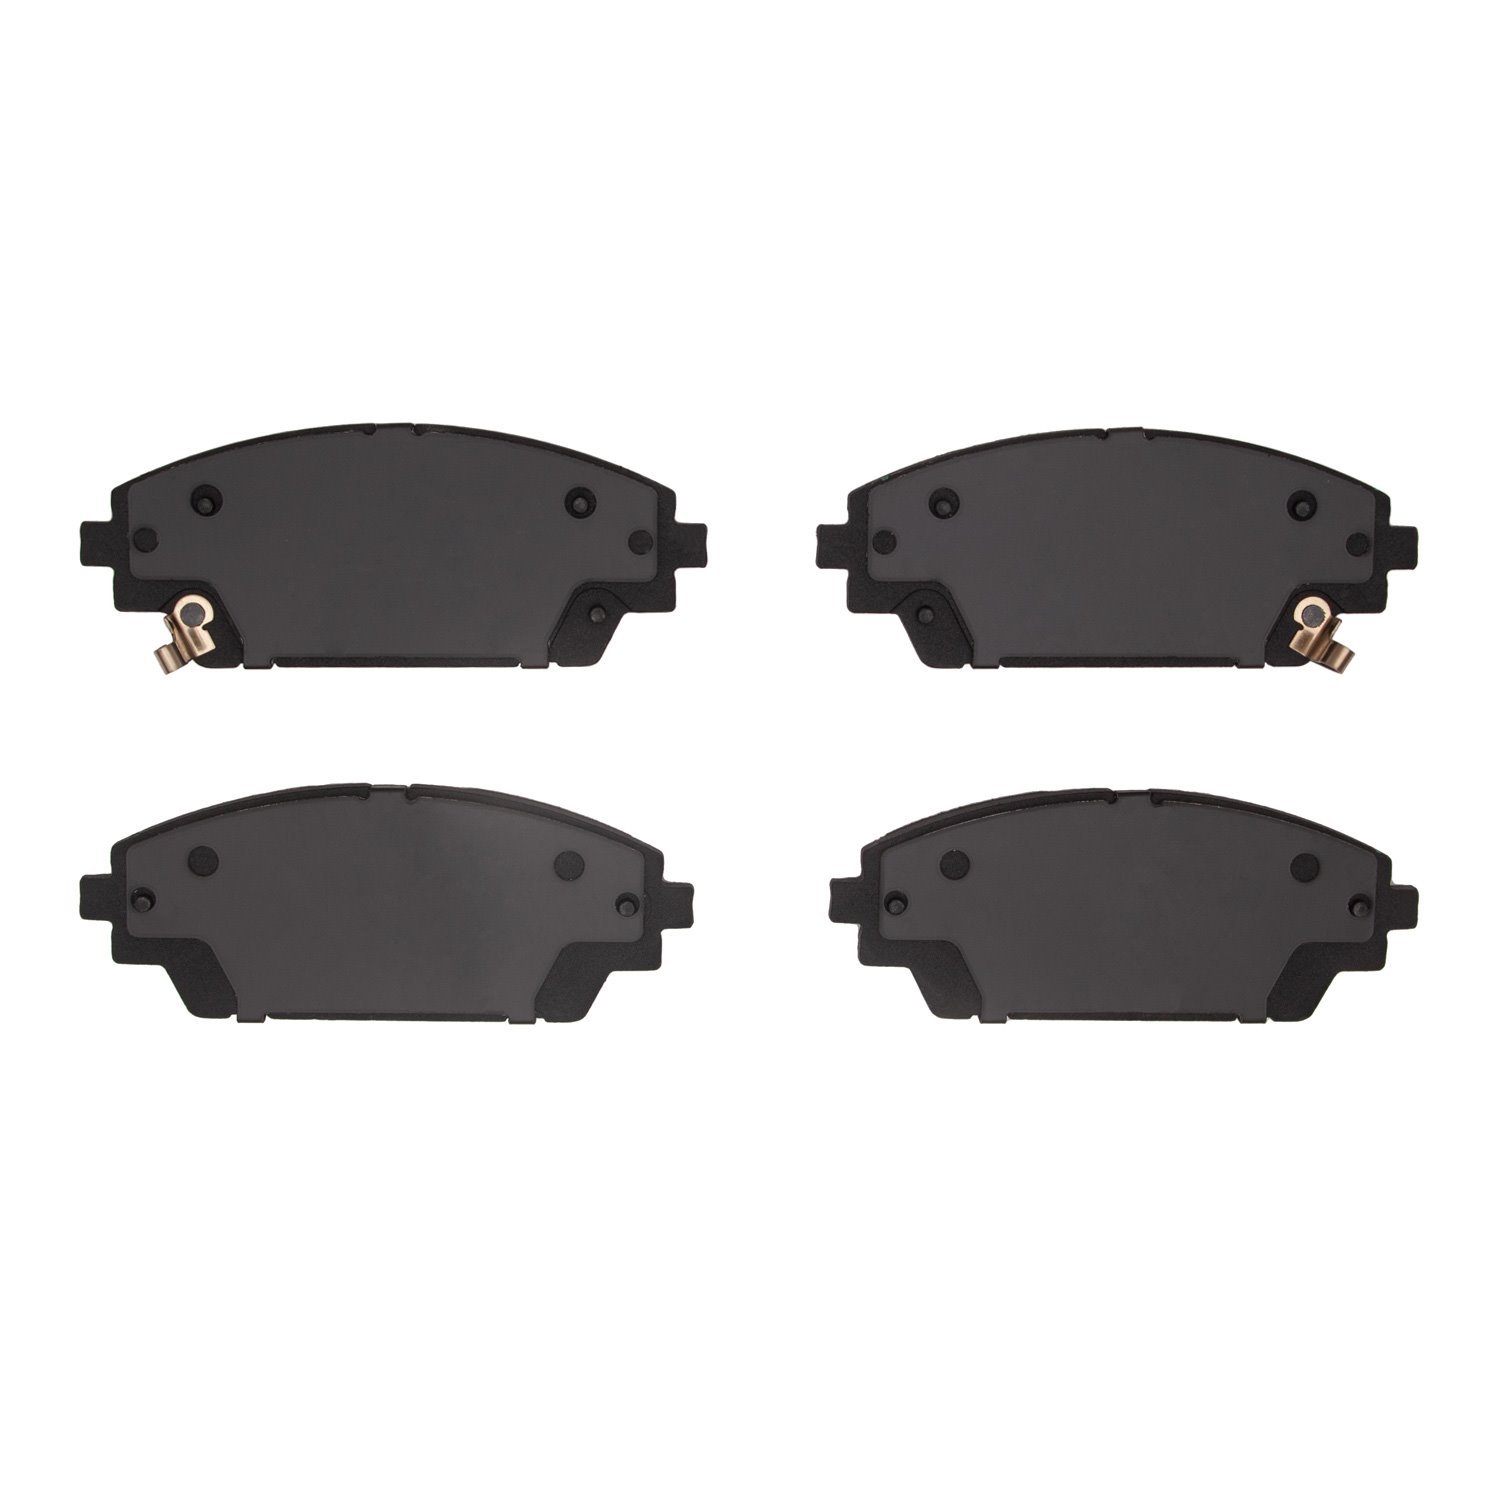 3000-Series Ceramic Brake Pads, Fits Select